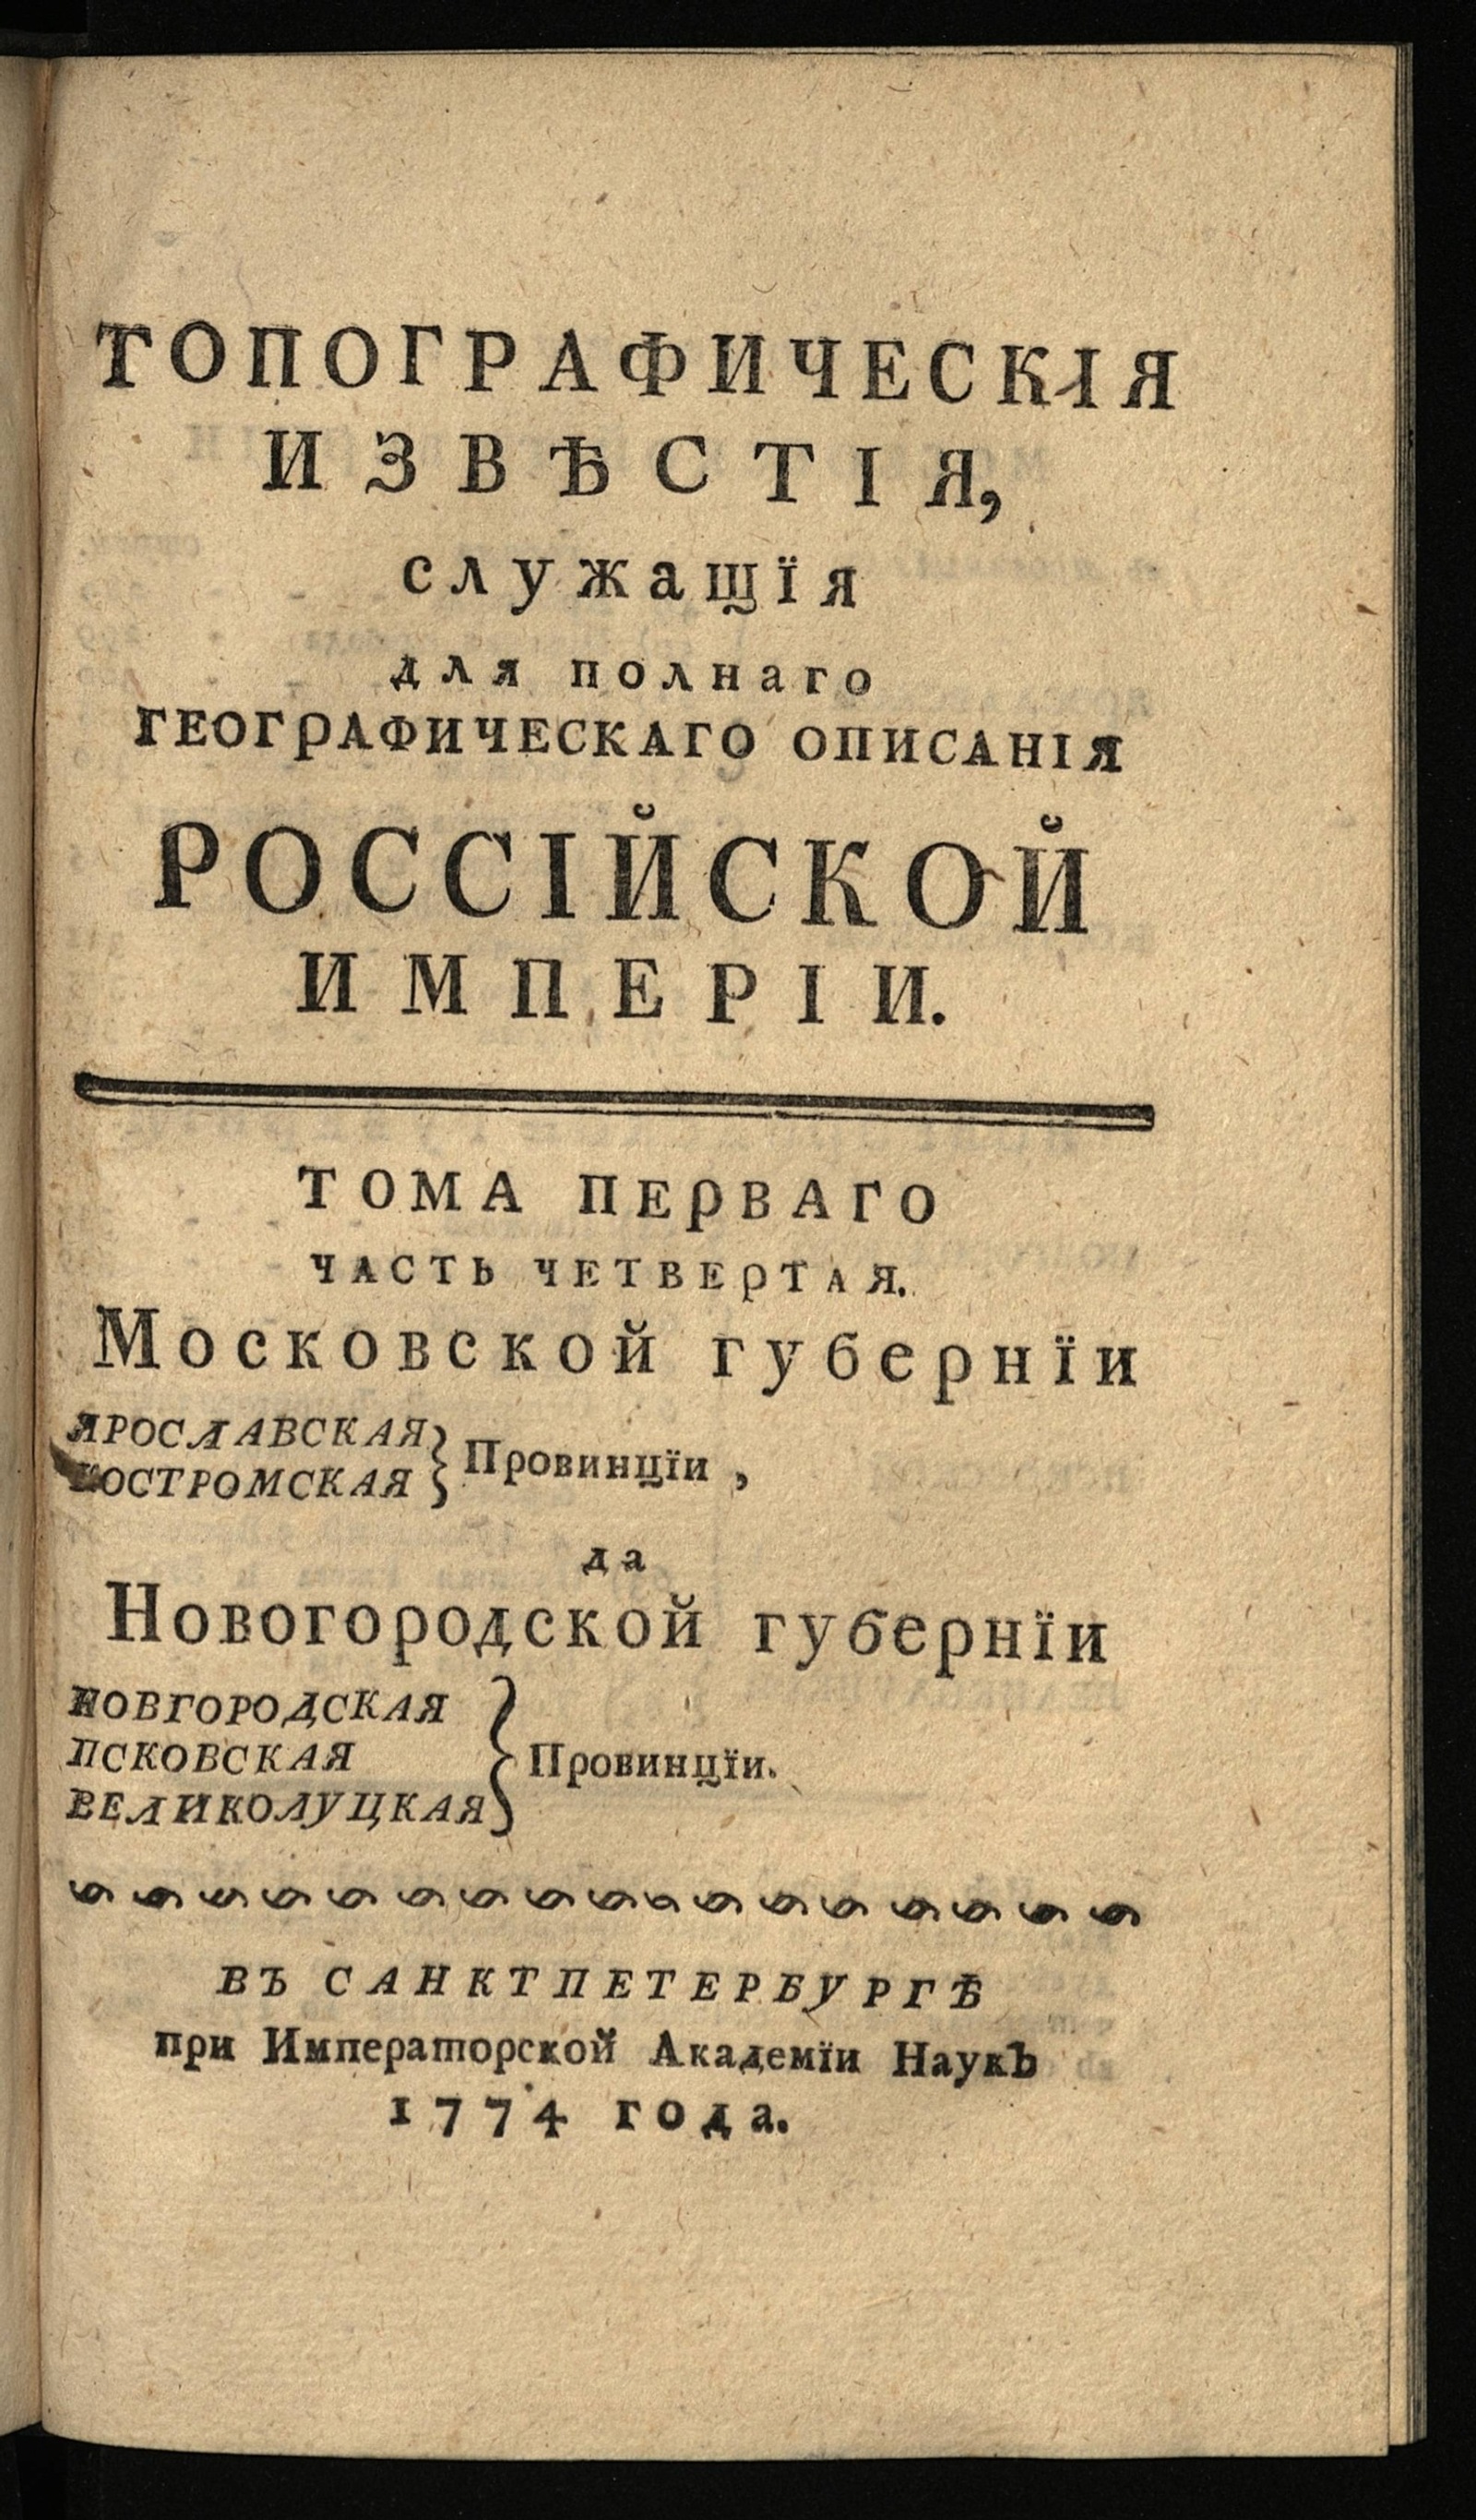 Изображение Топографическия известия служащия для полнаго географическаго описания Российской империи. Т. 1, ч. 4